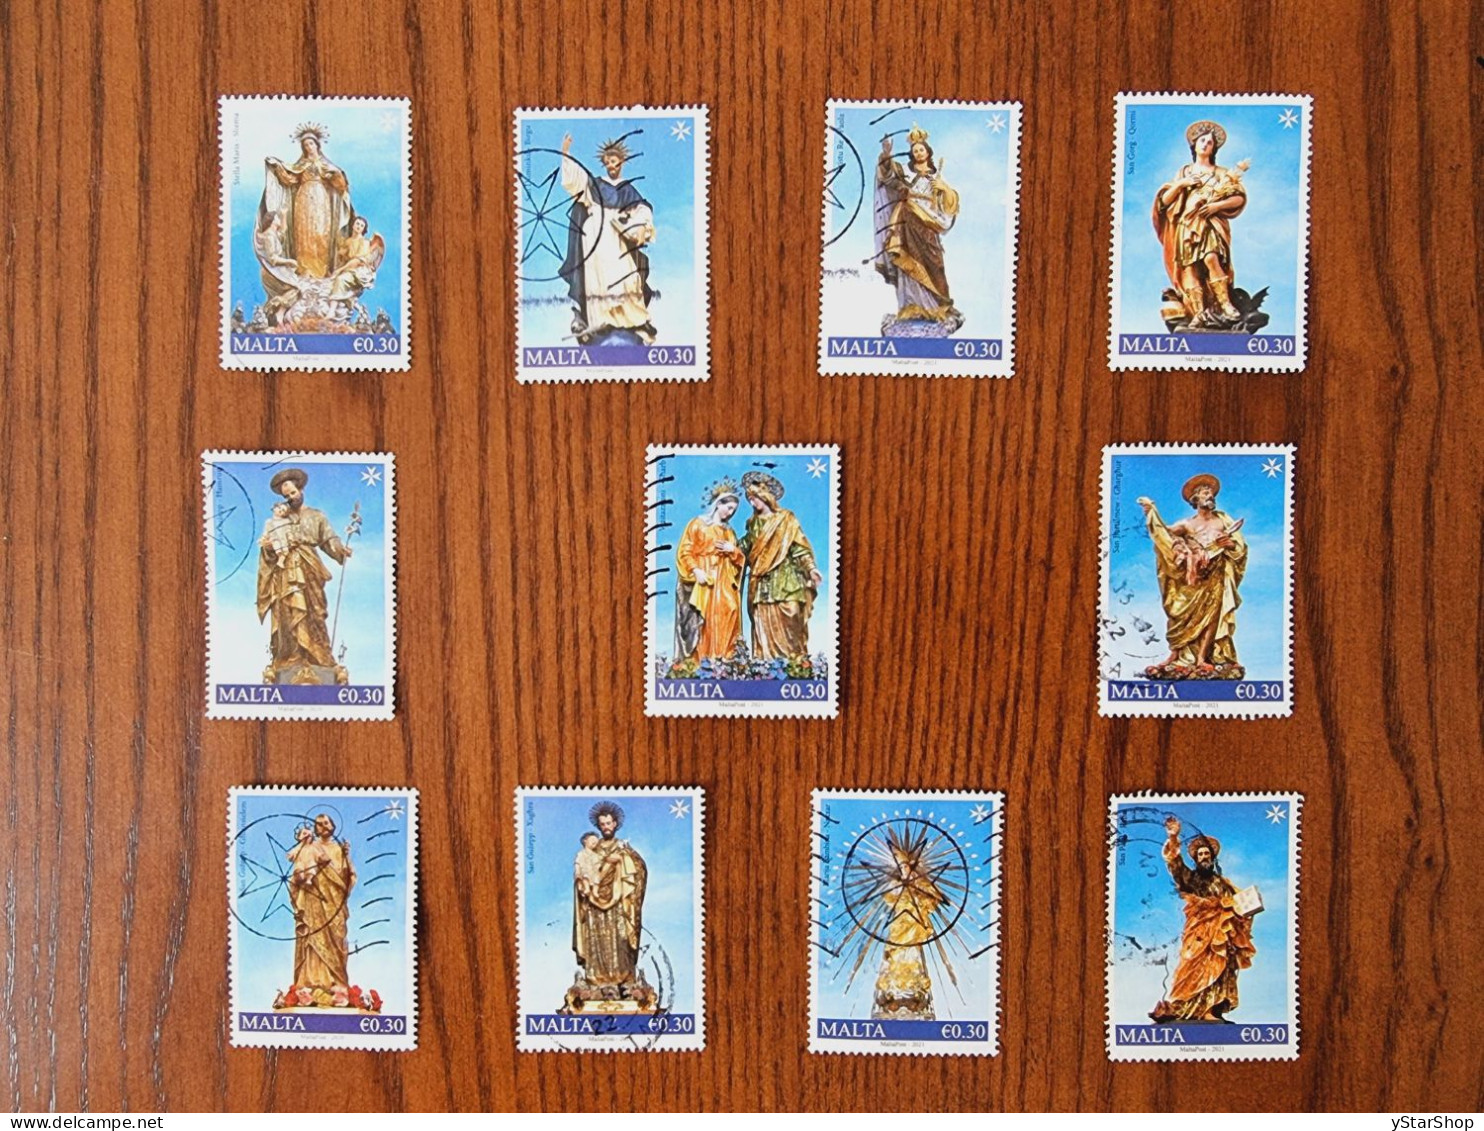 Malta Stamp Lot - Used - Christmas - Saints - Sculptures - Malta